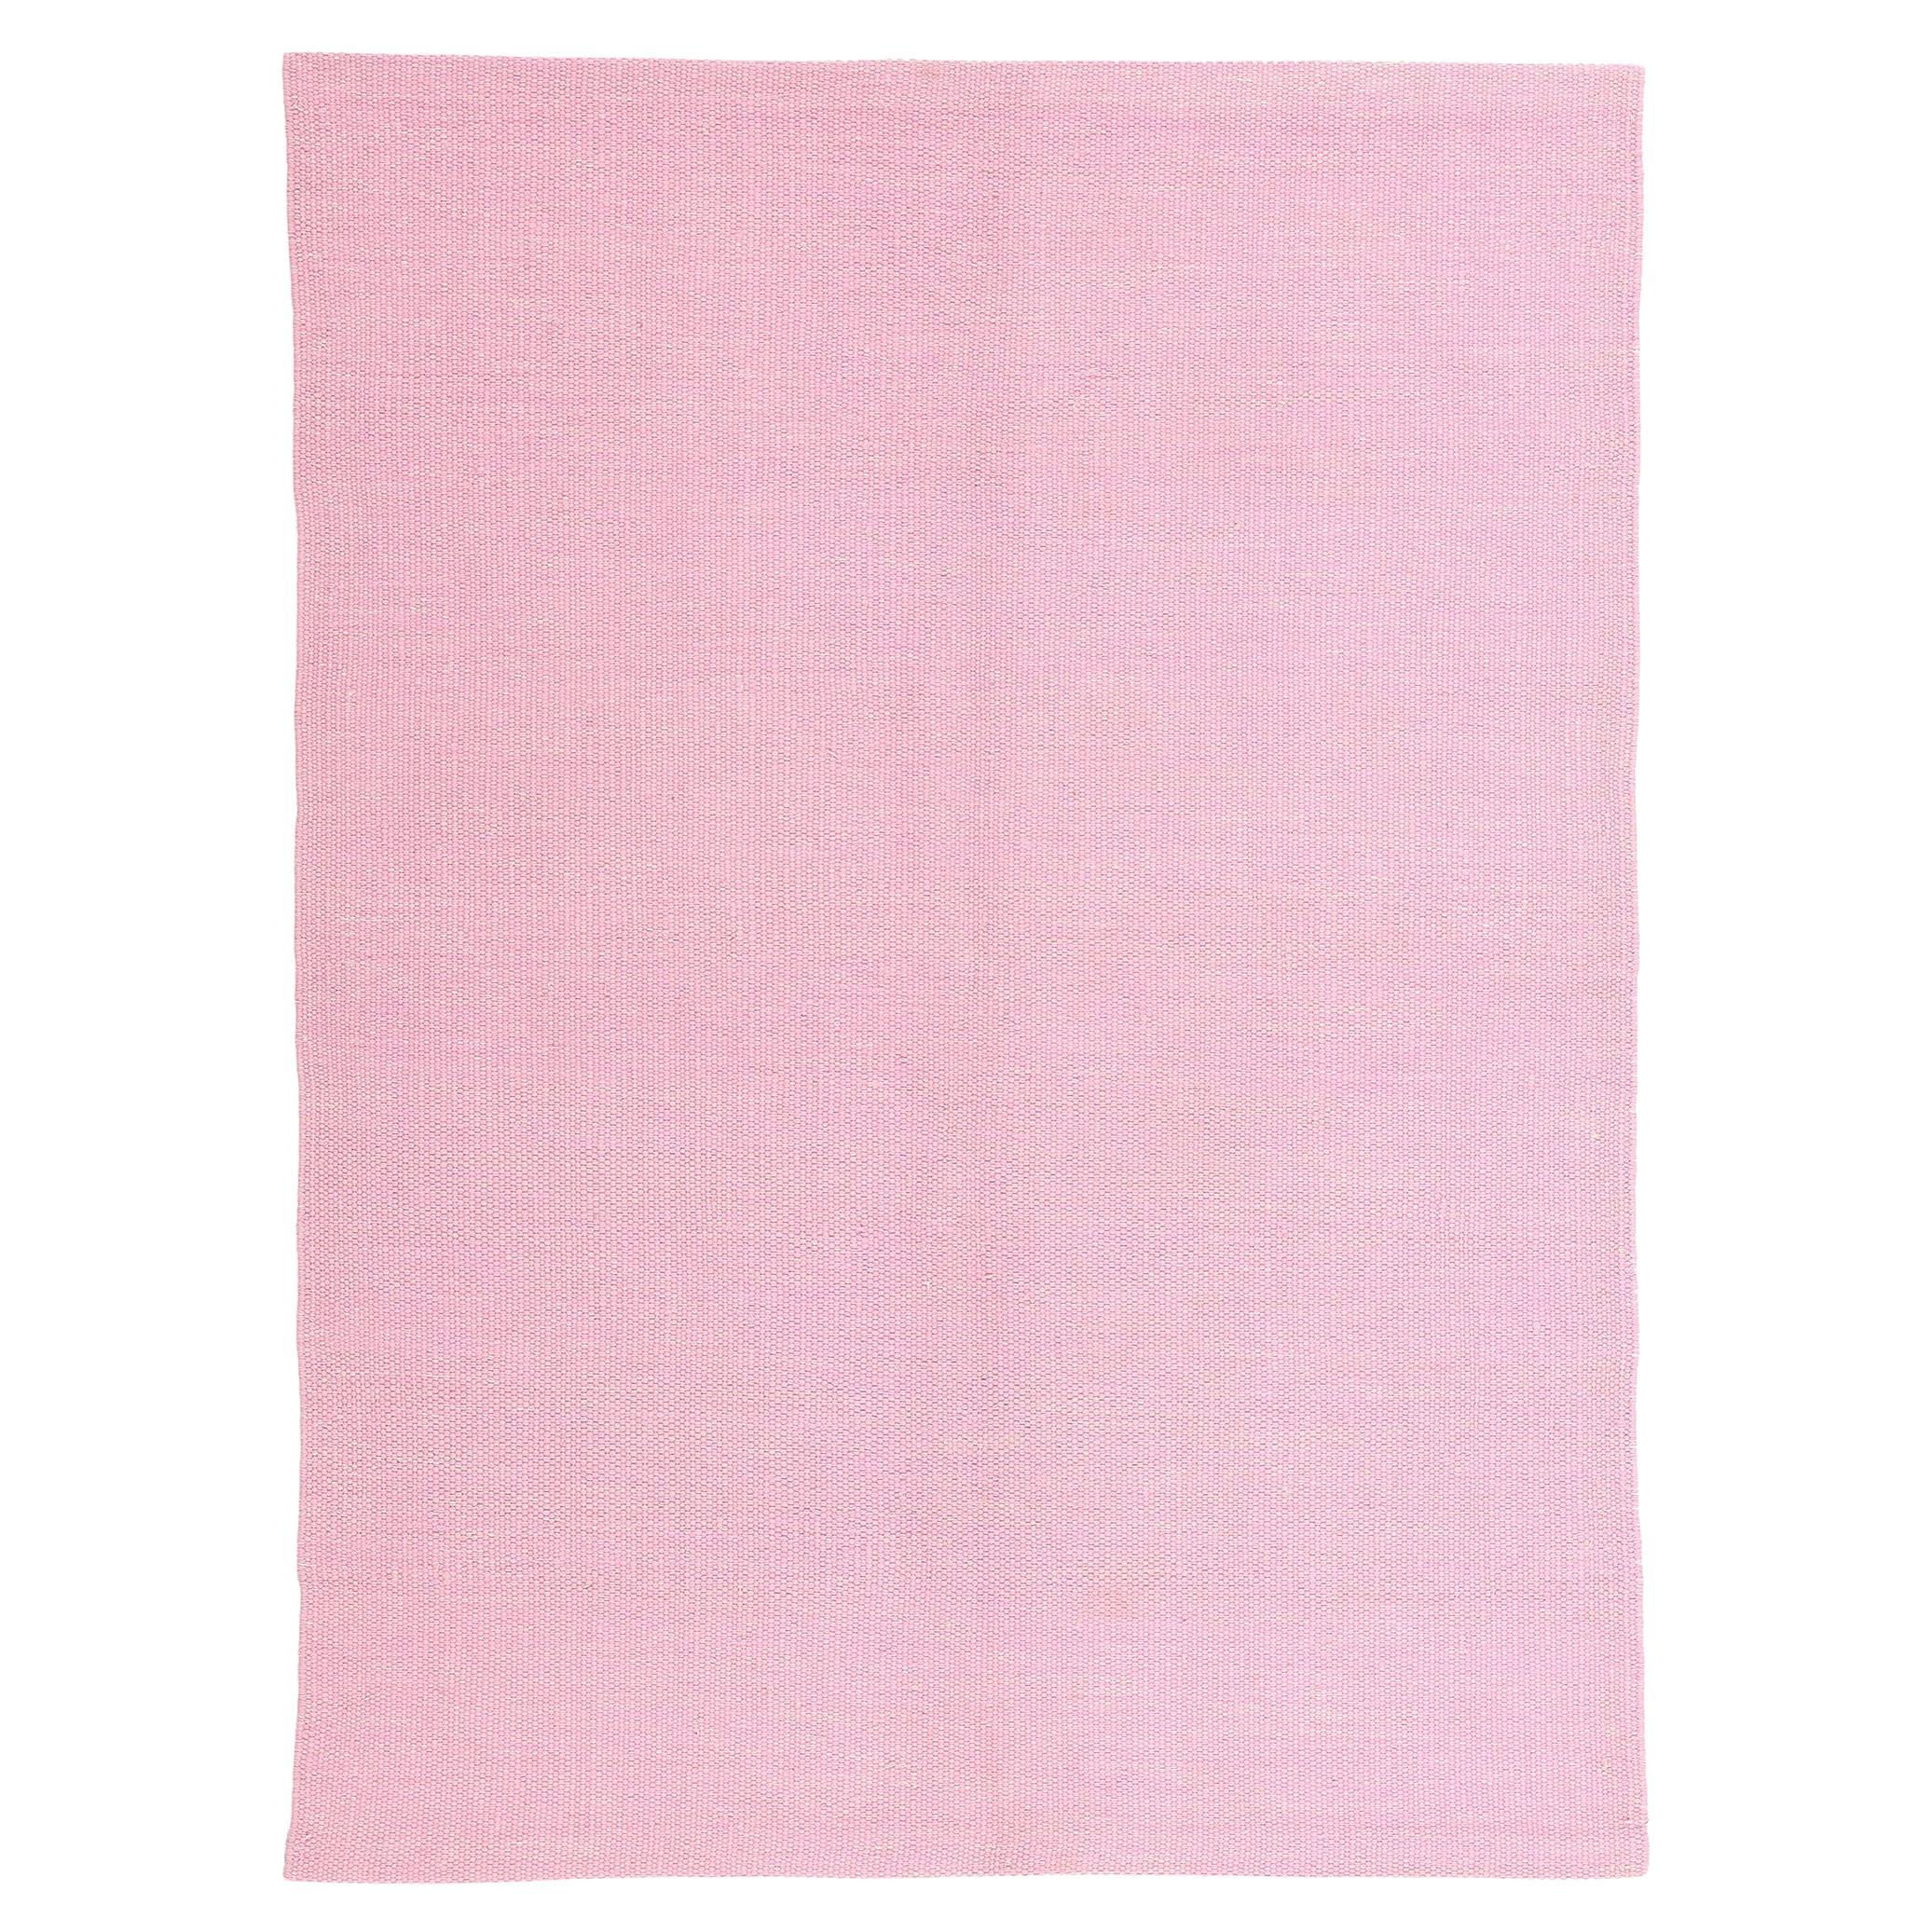 Schwedisch inspirierter rosa Kelim-Teppich mit skandinavisch-modernem Stil